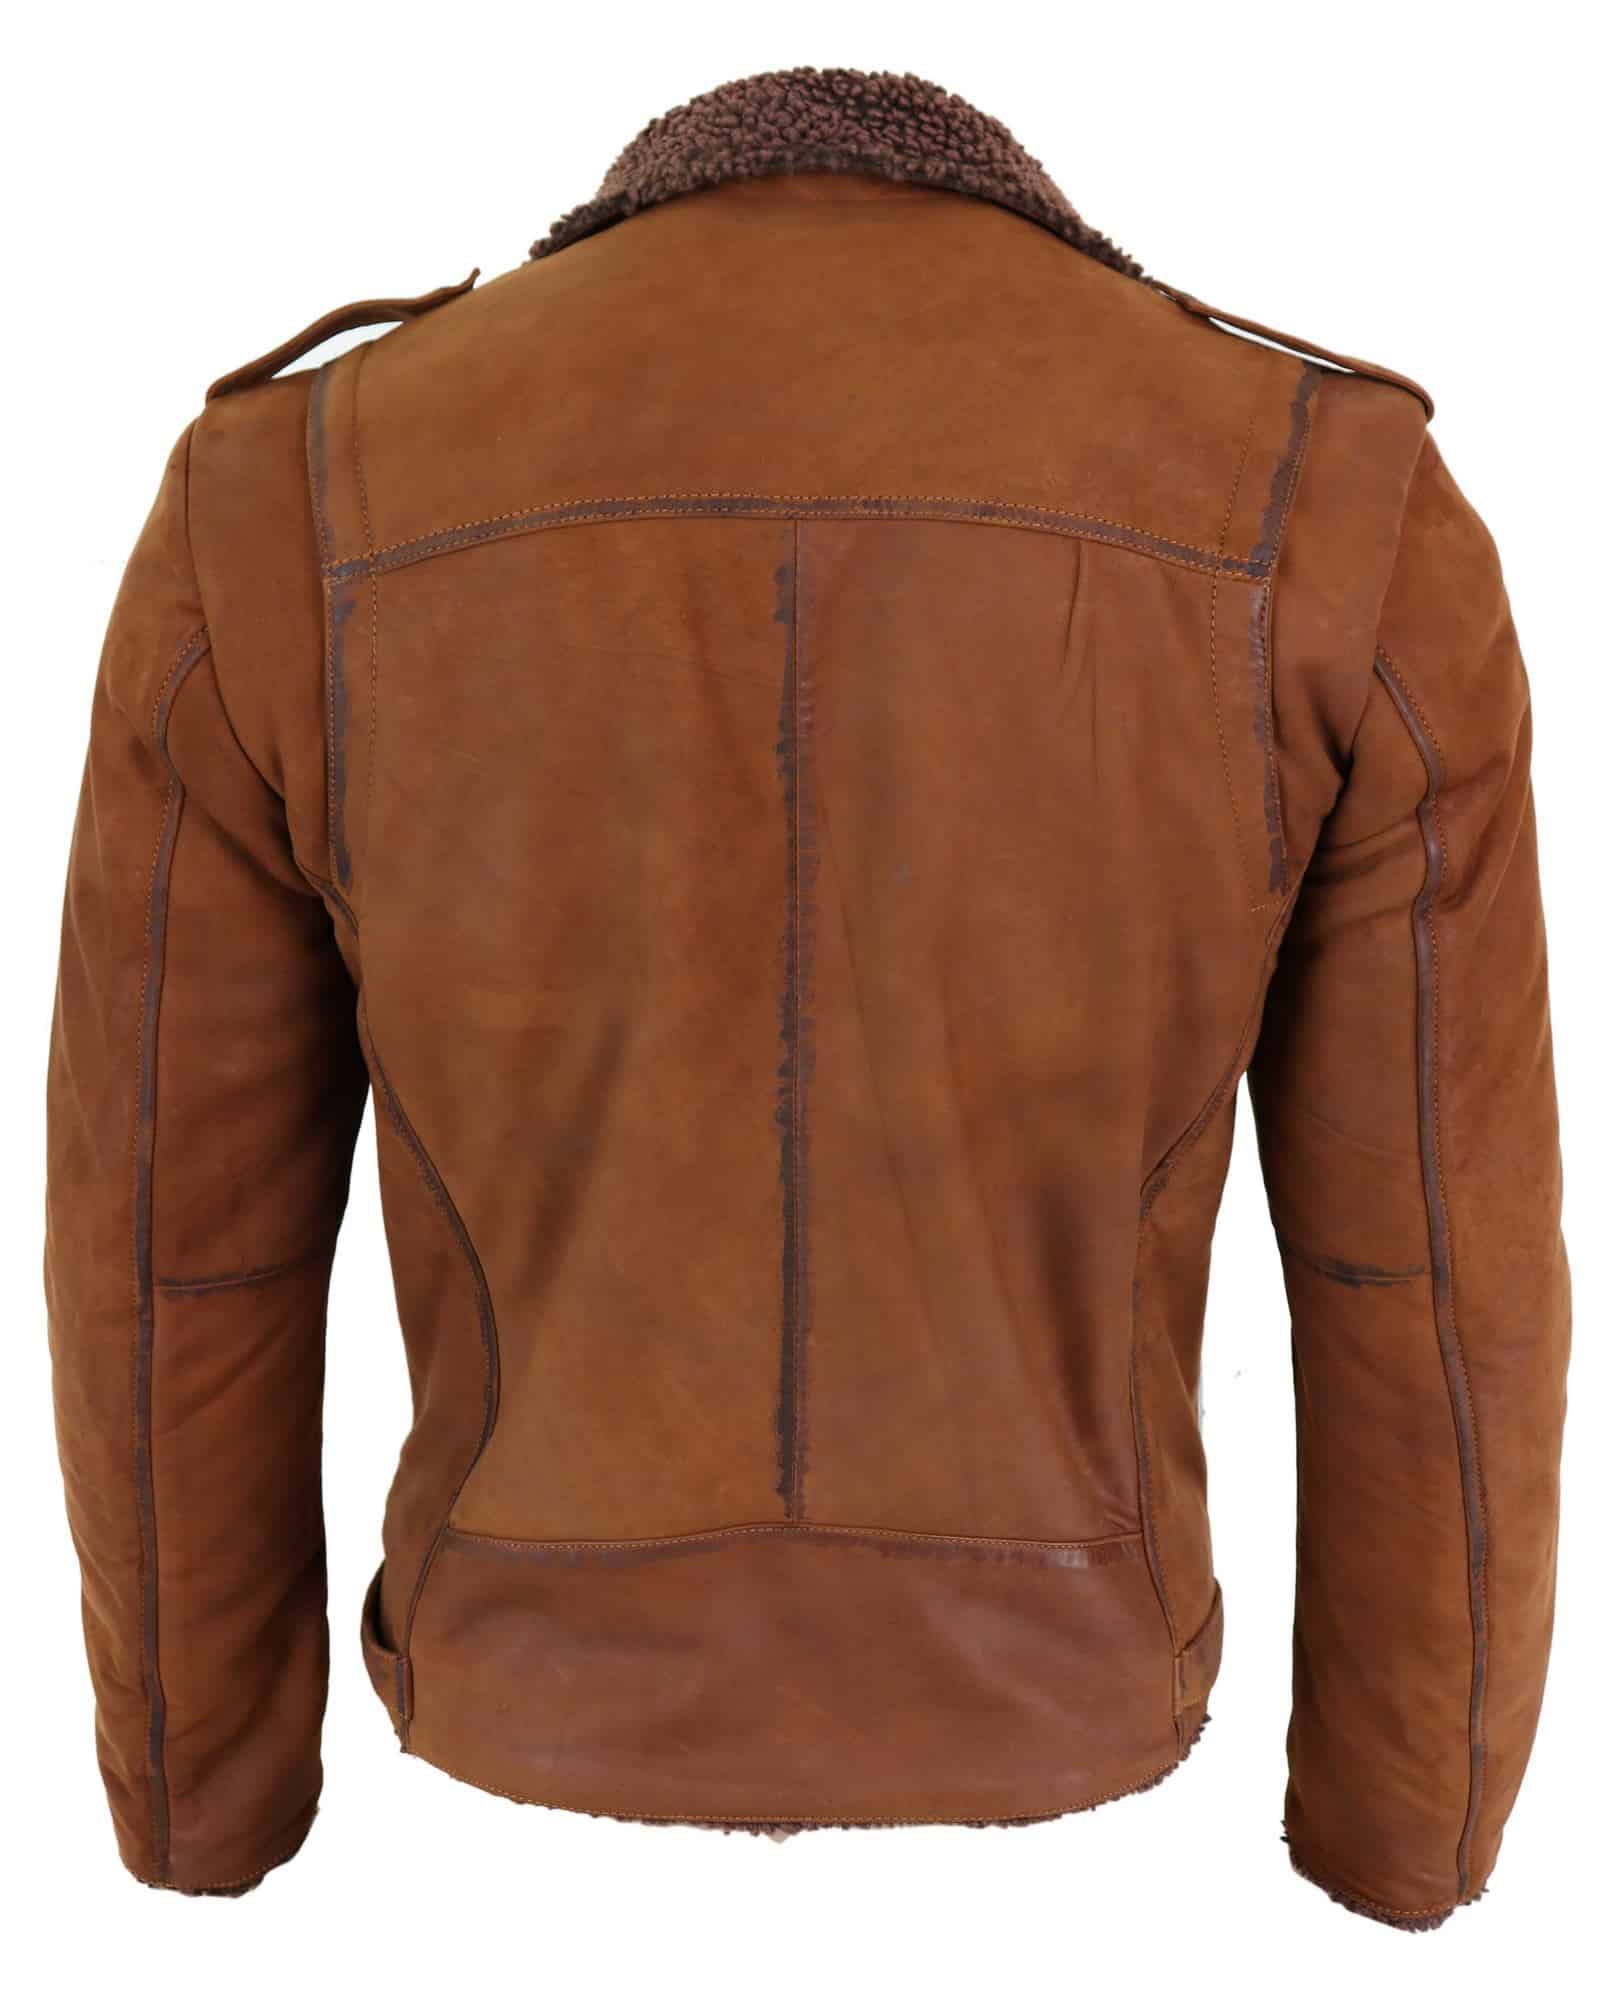 Real Leather Men's Cross-Zip Biker Jacket, Fleece Lined-Tan: Buy